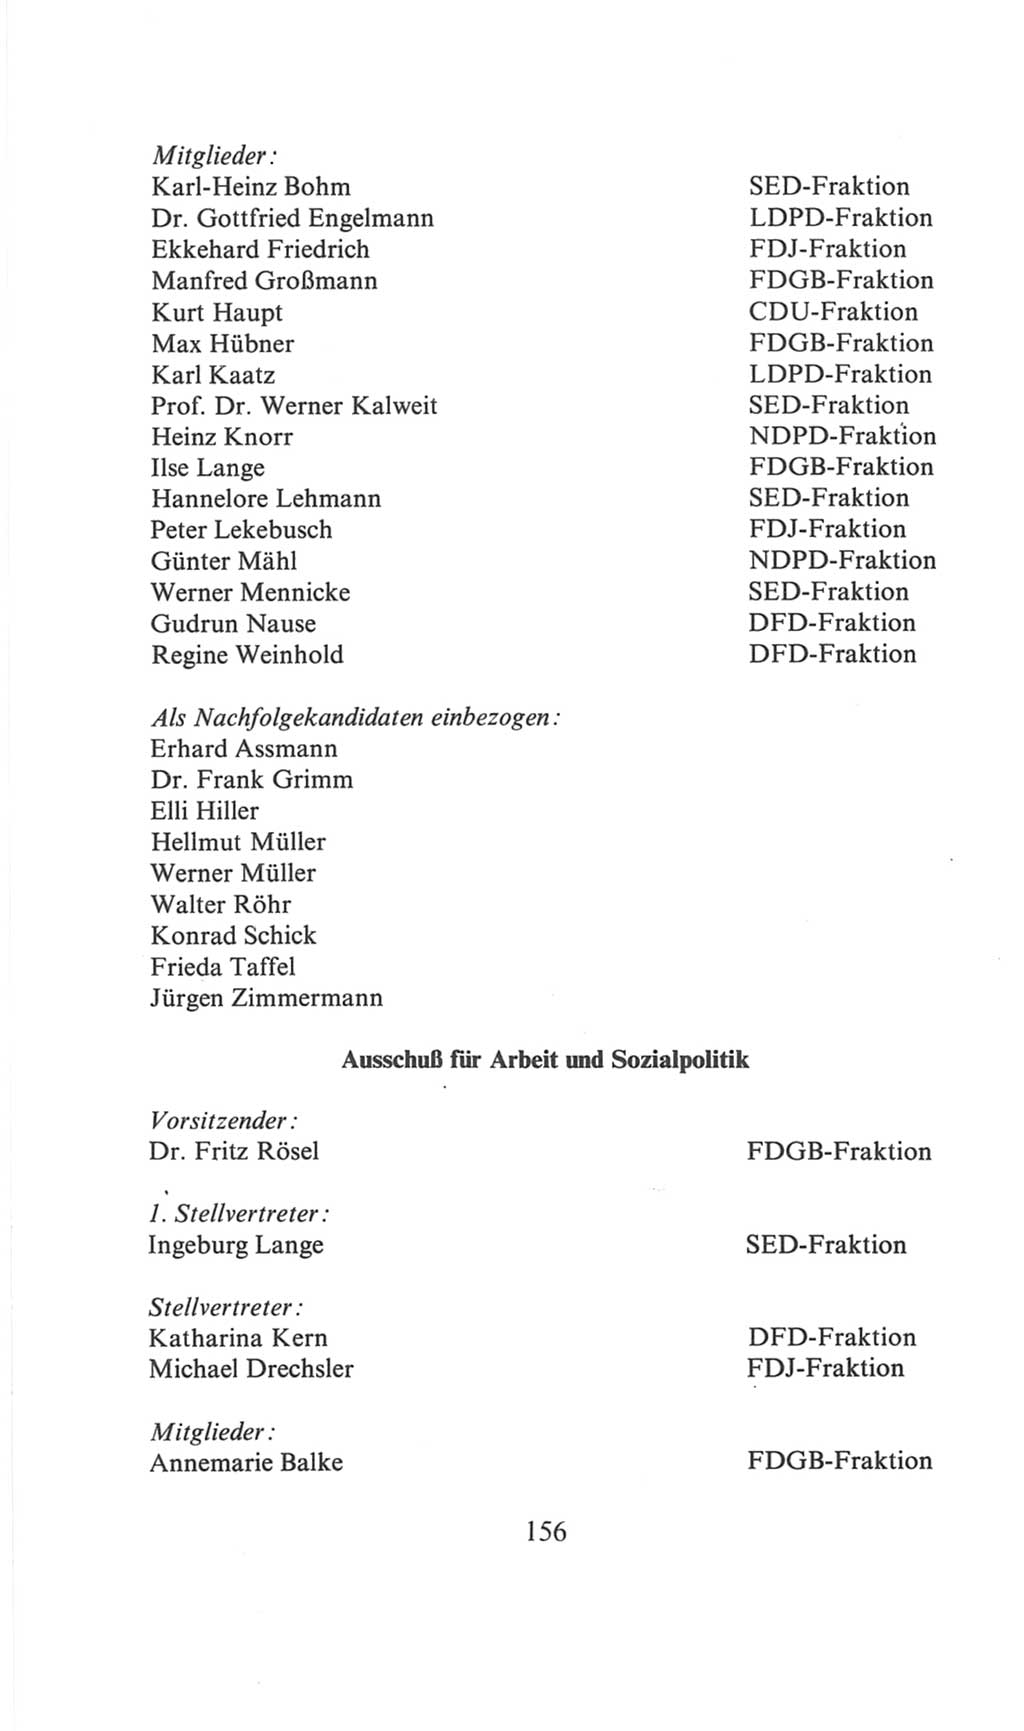 Volkskammer (VK) der Deutschen Demokratischen Republik (DDR), 6. Wahlperiode 1971-1976, Seite 156 (VK. DDR 6. WP. 1971-1976, S. 156)